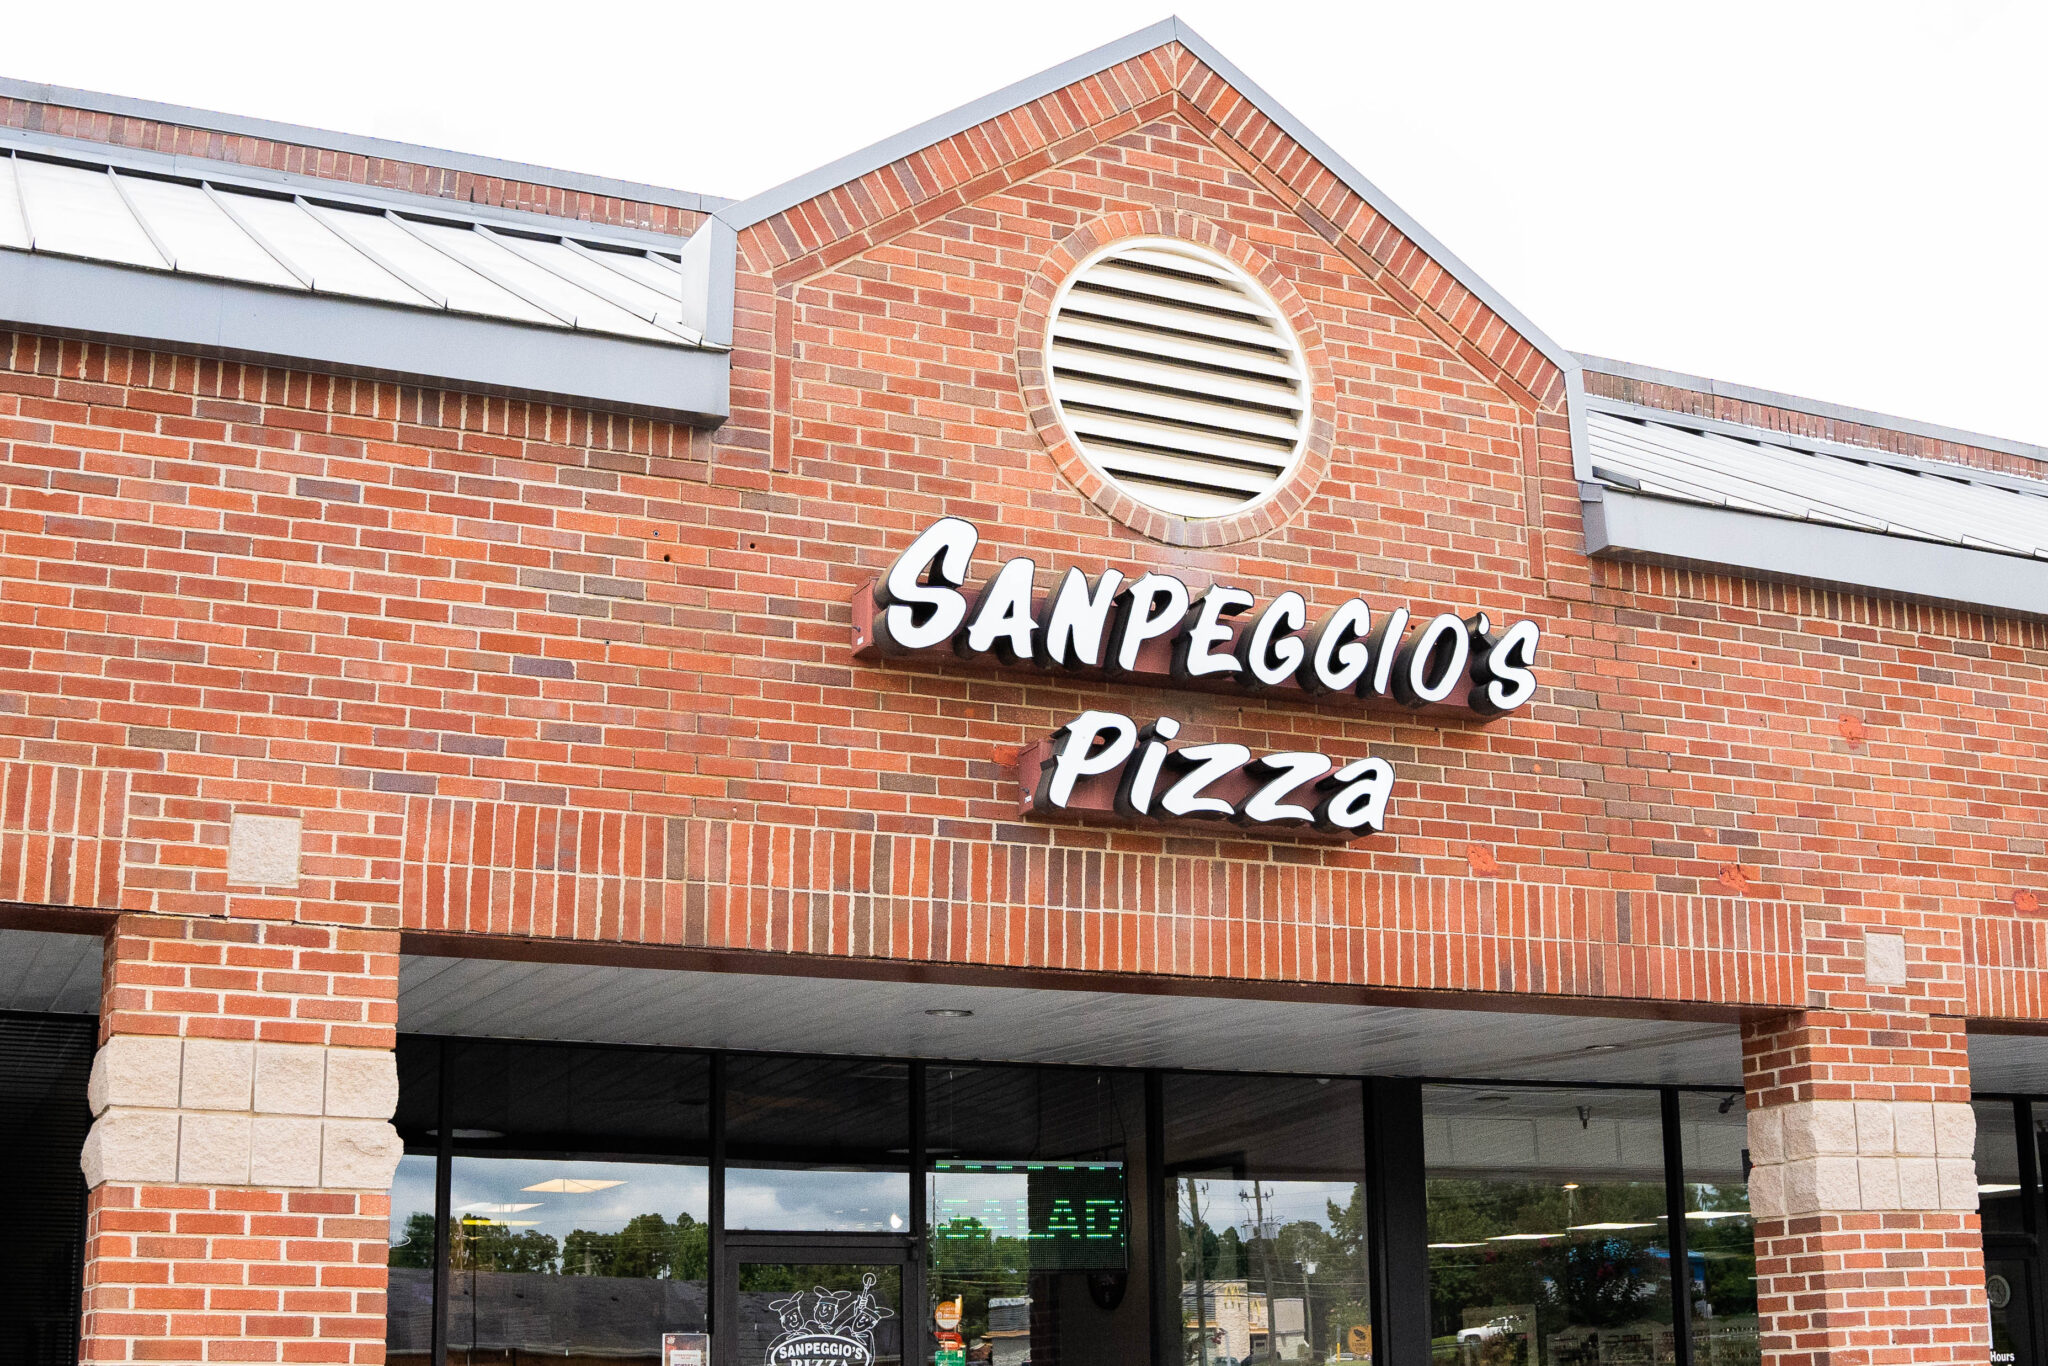 SanPeggio's